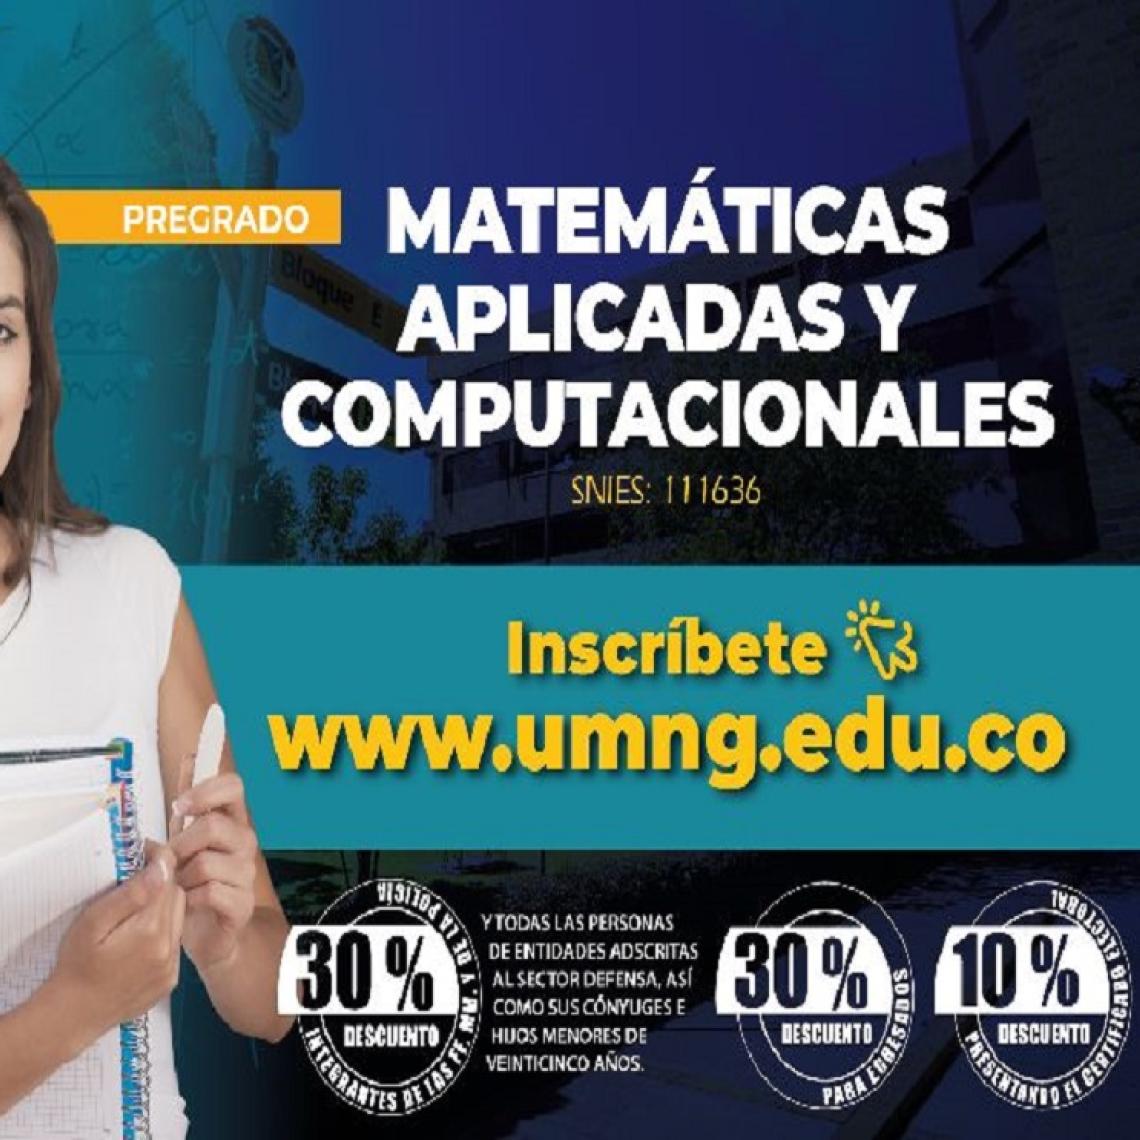 Universidad Militar Nueva Granada presenta nuevo programa de pregrado en Matemáticas Aplicadas y Computacionales